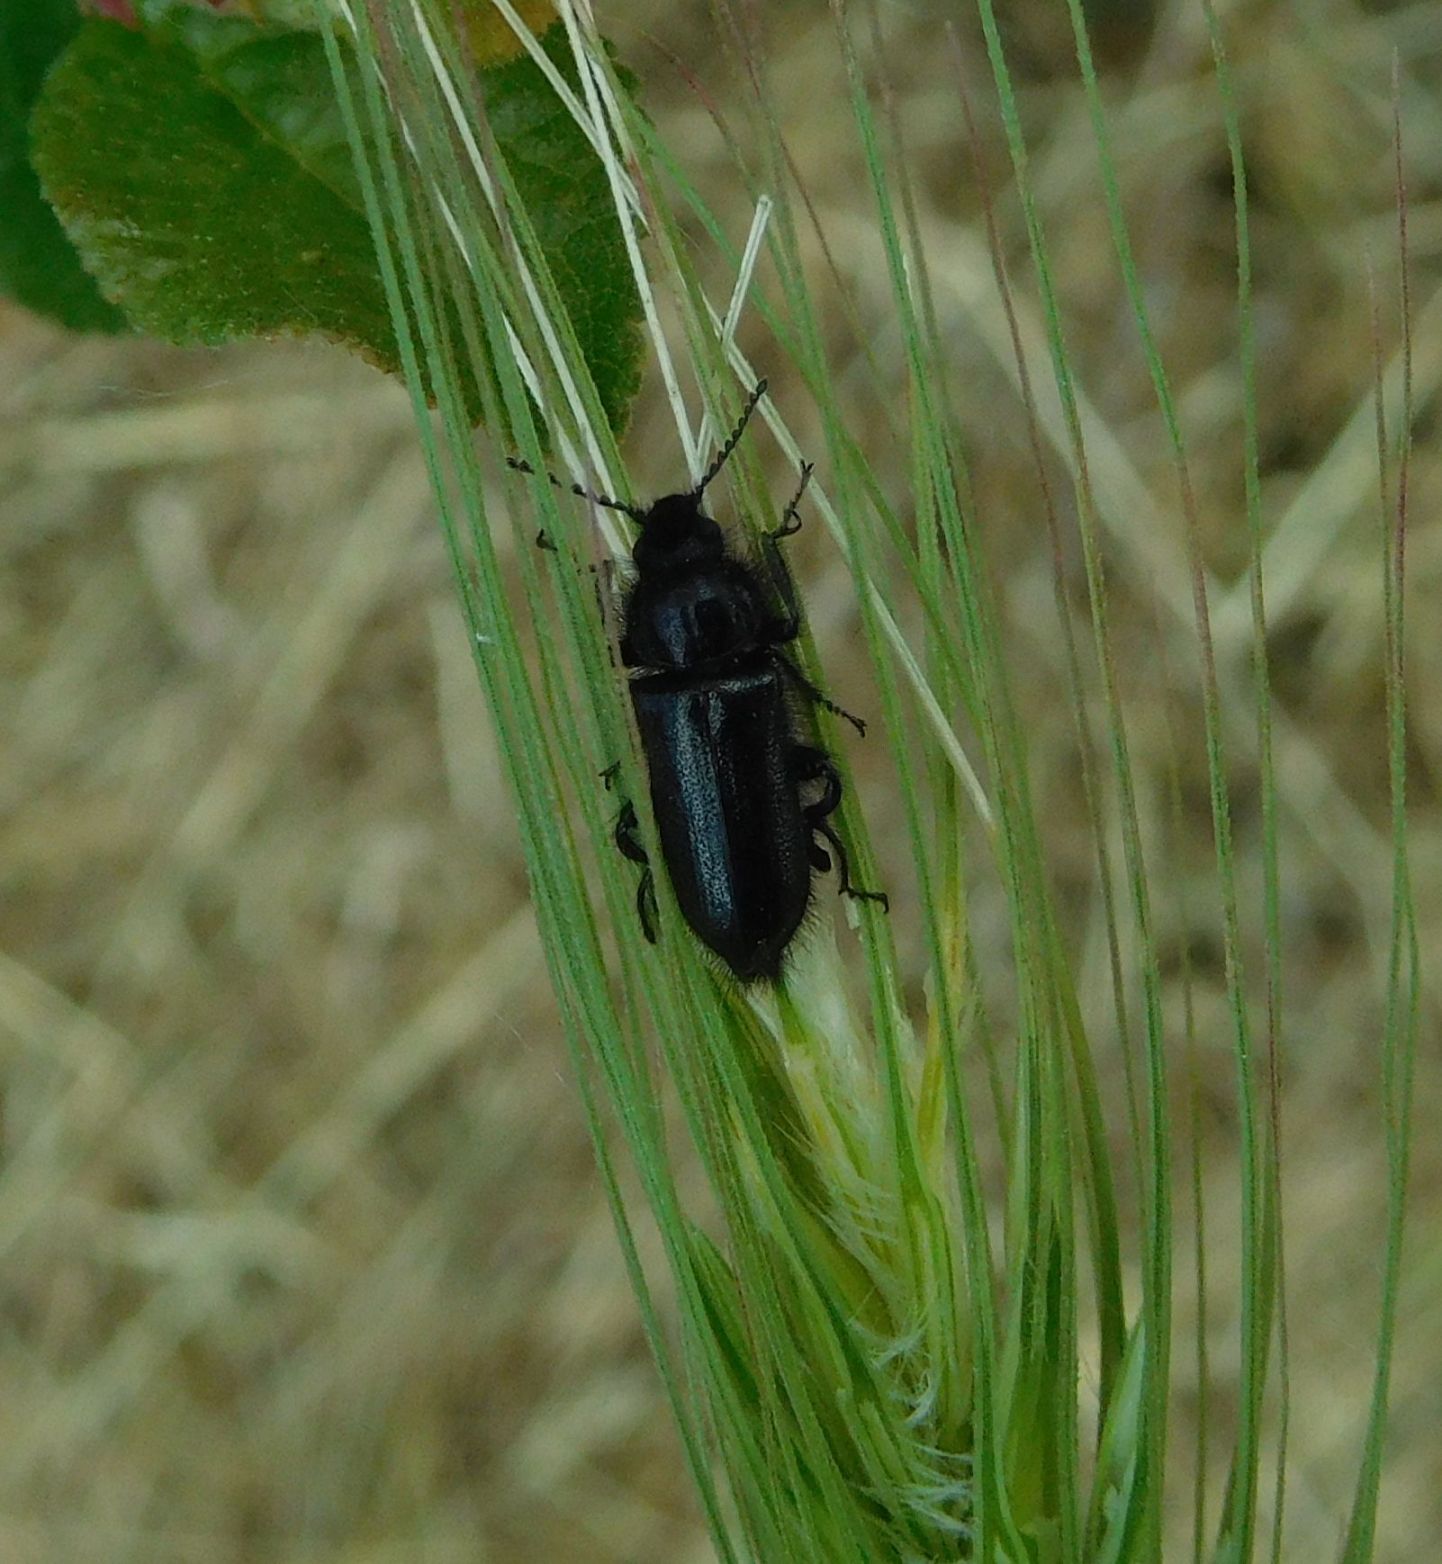 Dasytidae: Enicopus ater